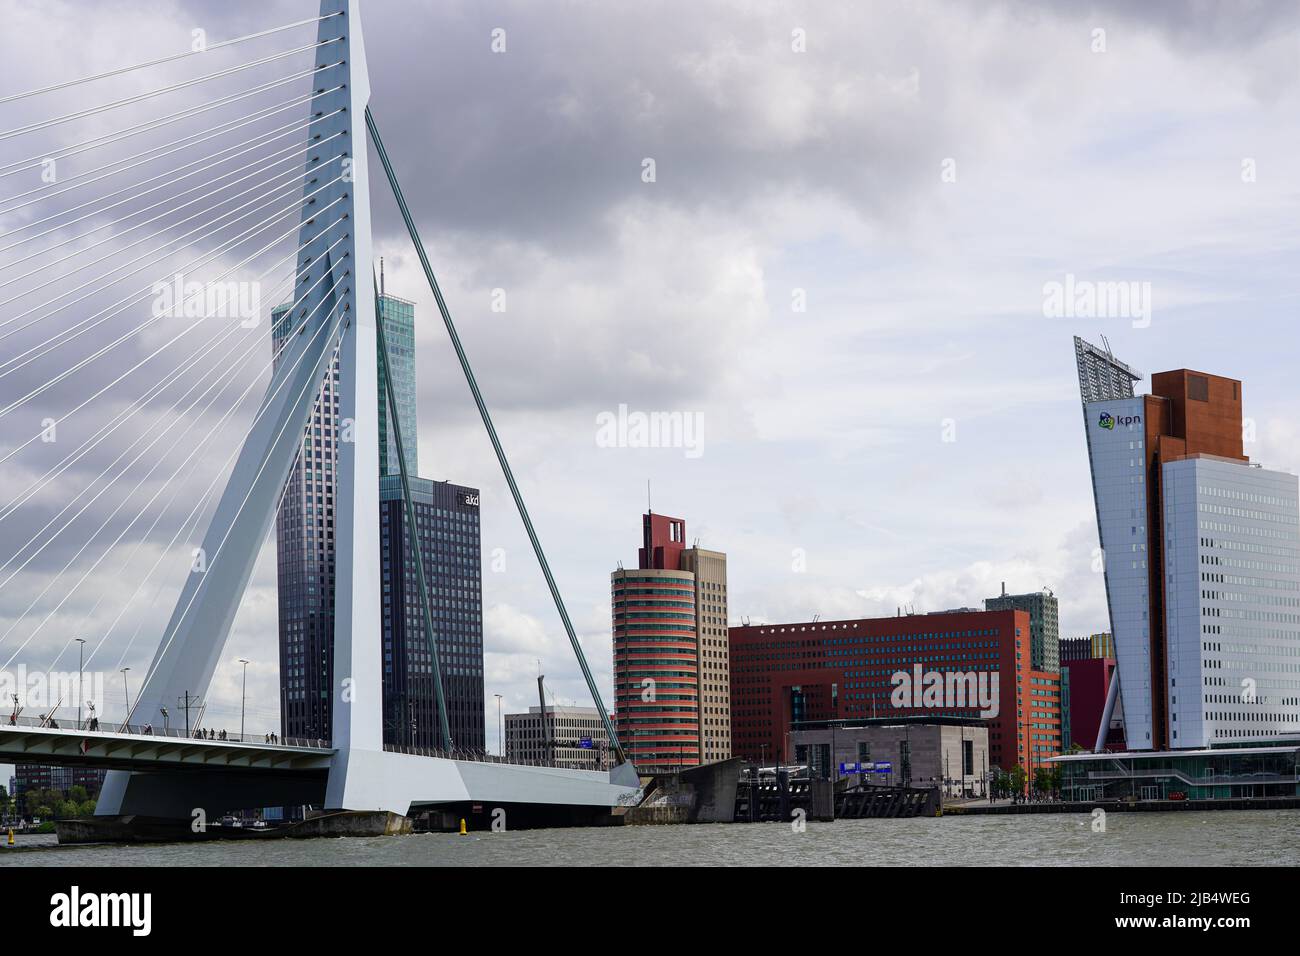 Il ponte Erasmus di Rotterdam, lungo 802 metri, architetto Van Berkel & Bos, con grattacieli, 25,5.22, Rotterdam, Paesi Bassi. Foto Stock